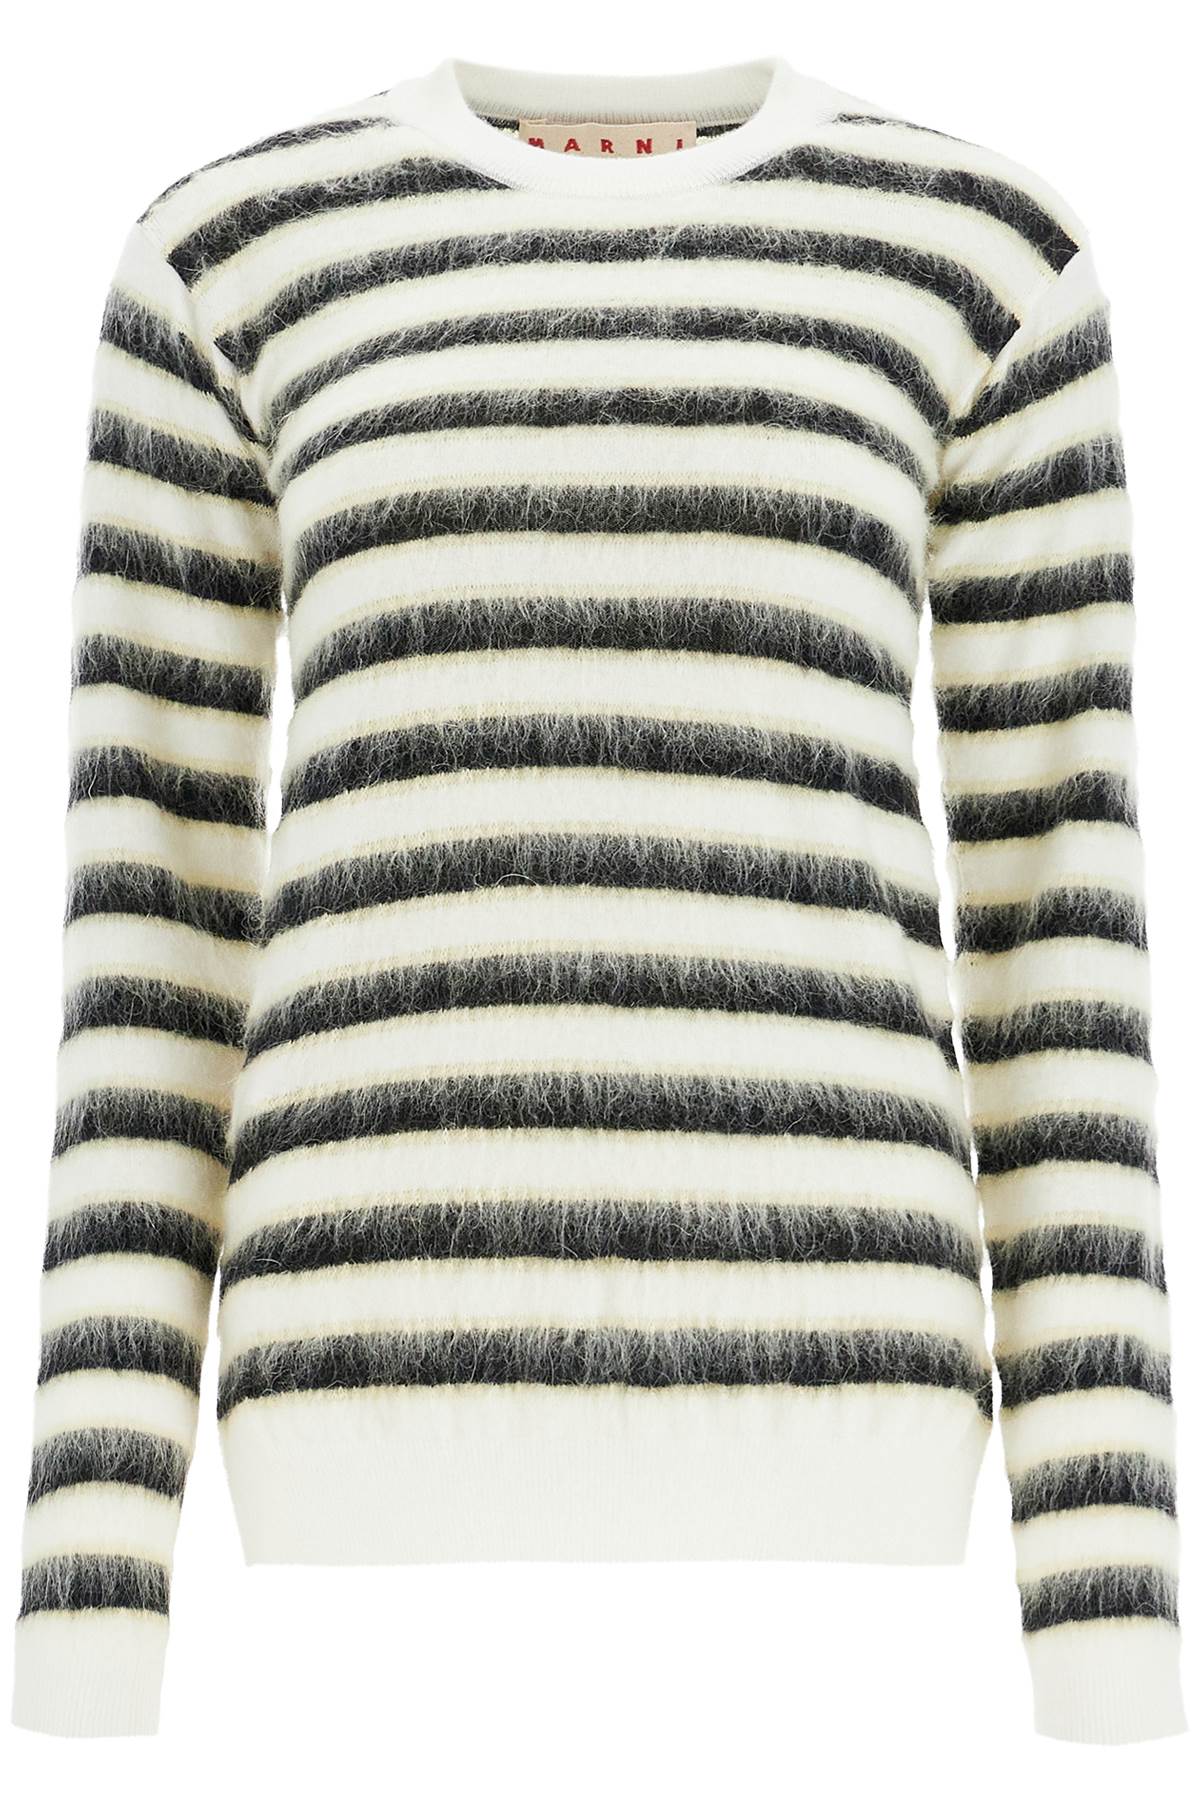 Marni MARNI striped crewneck pullover